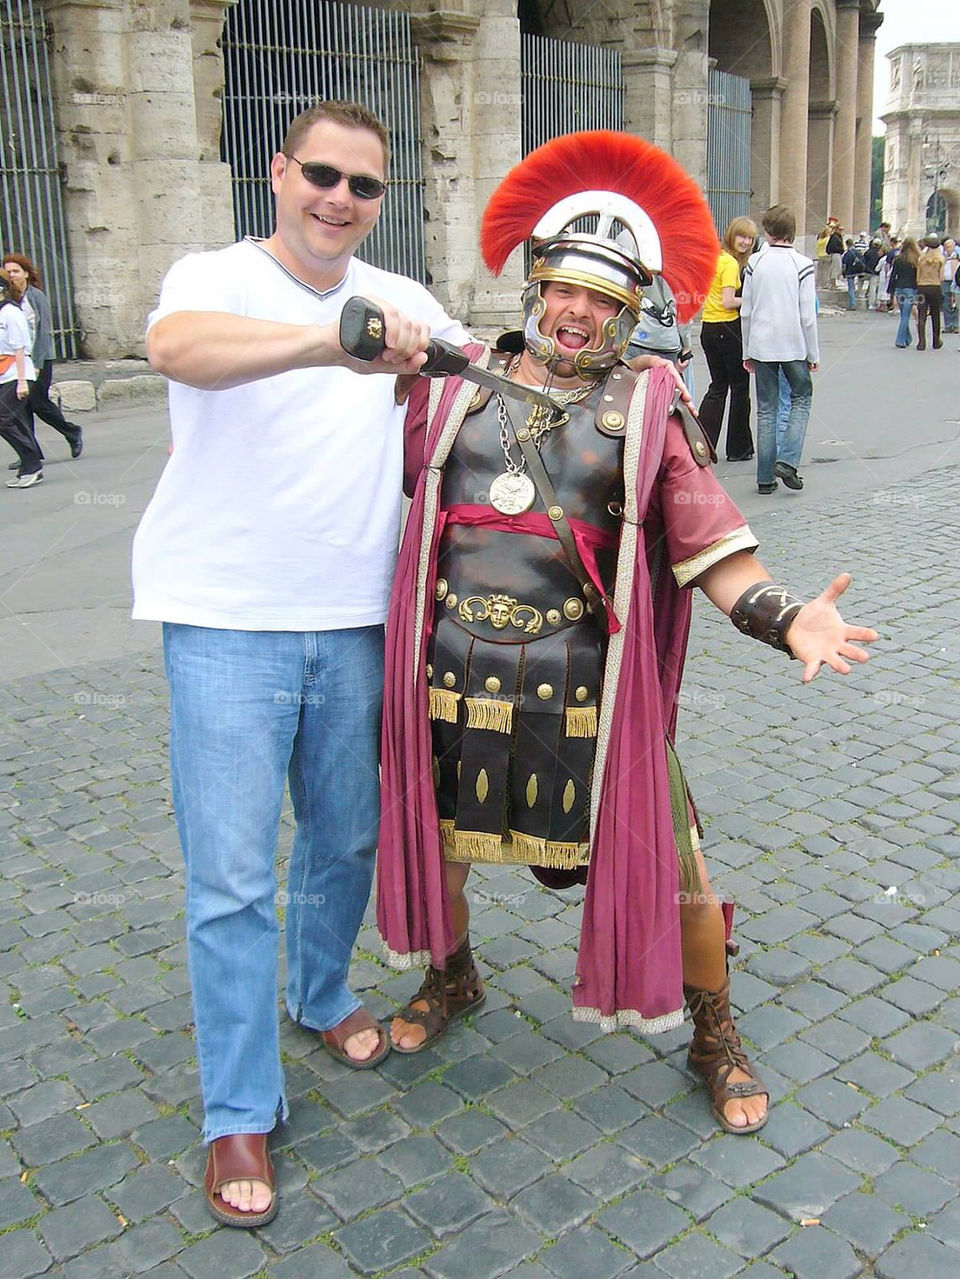 rome tourist coliseum solider by lexington1